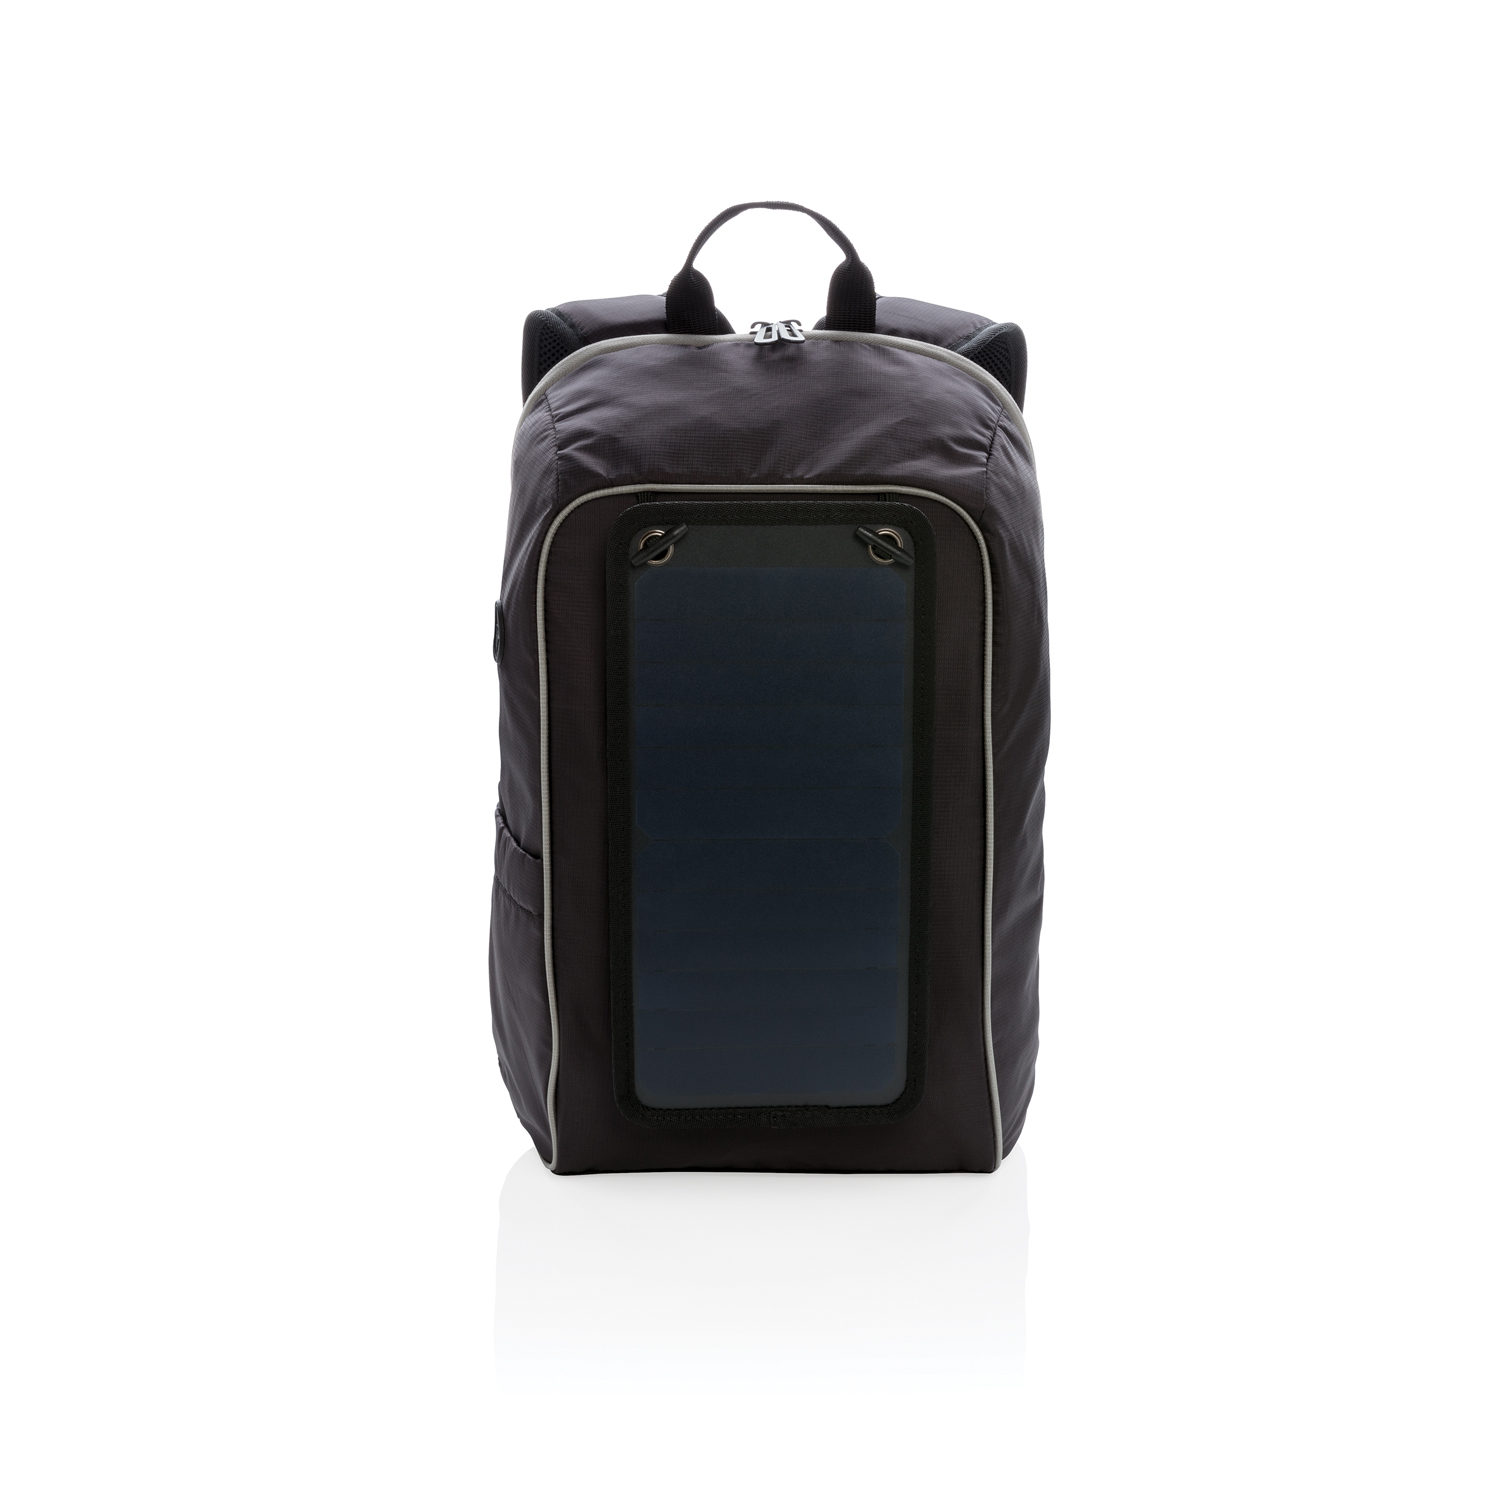 Походный рюкзак с солнечной батареей, черный